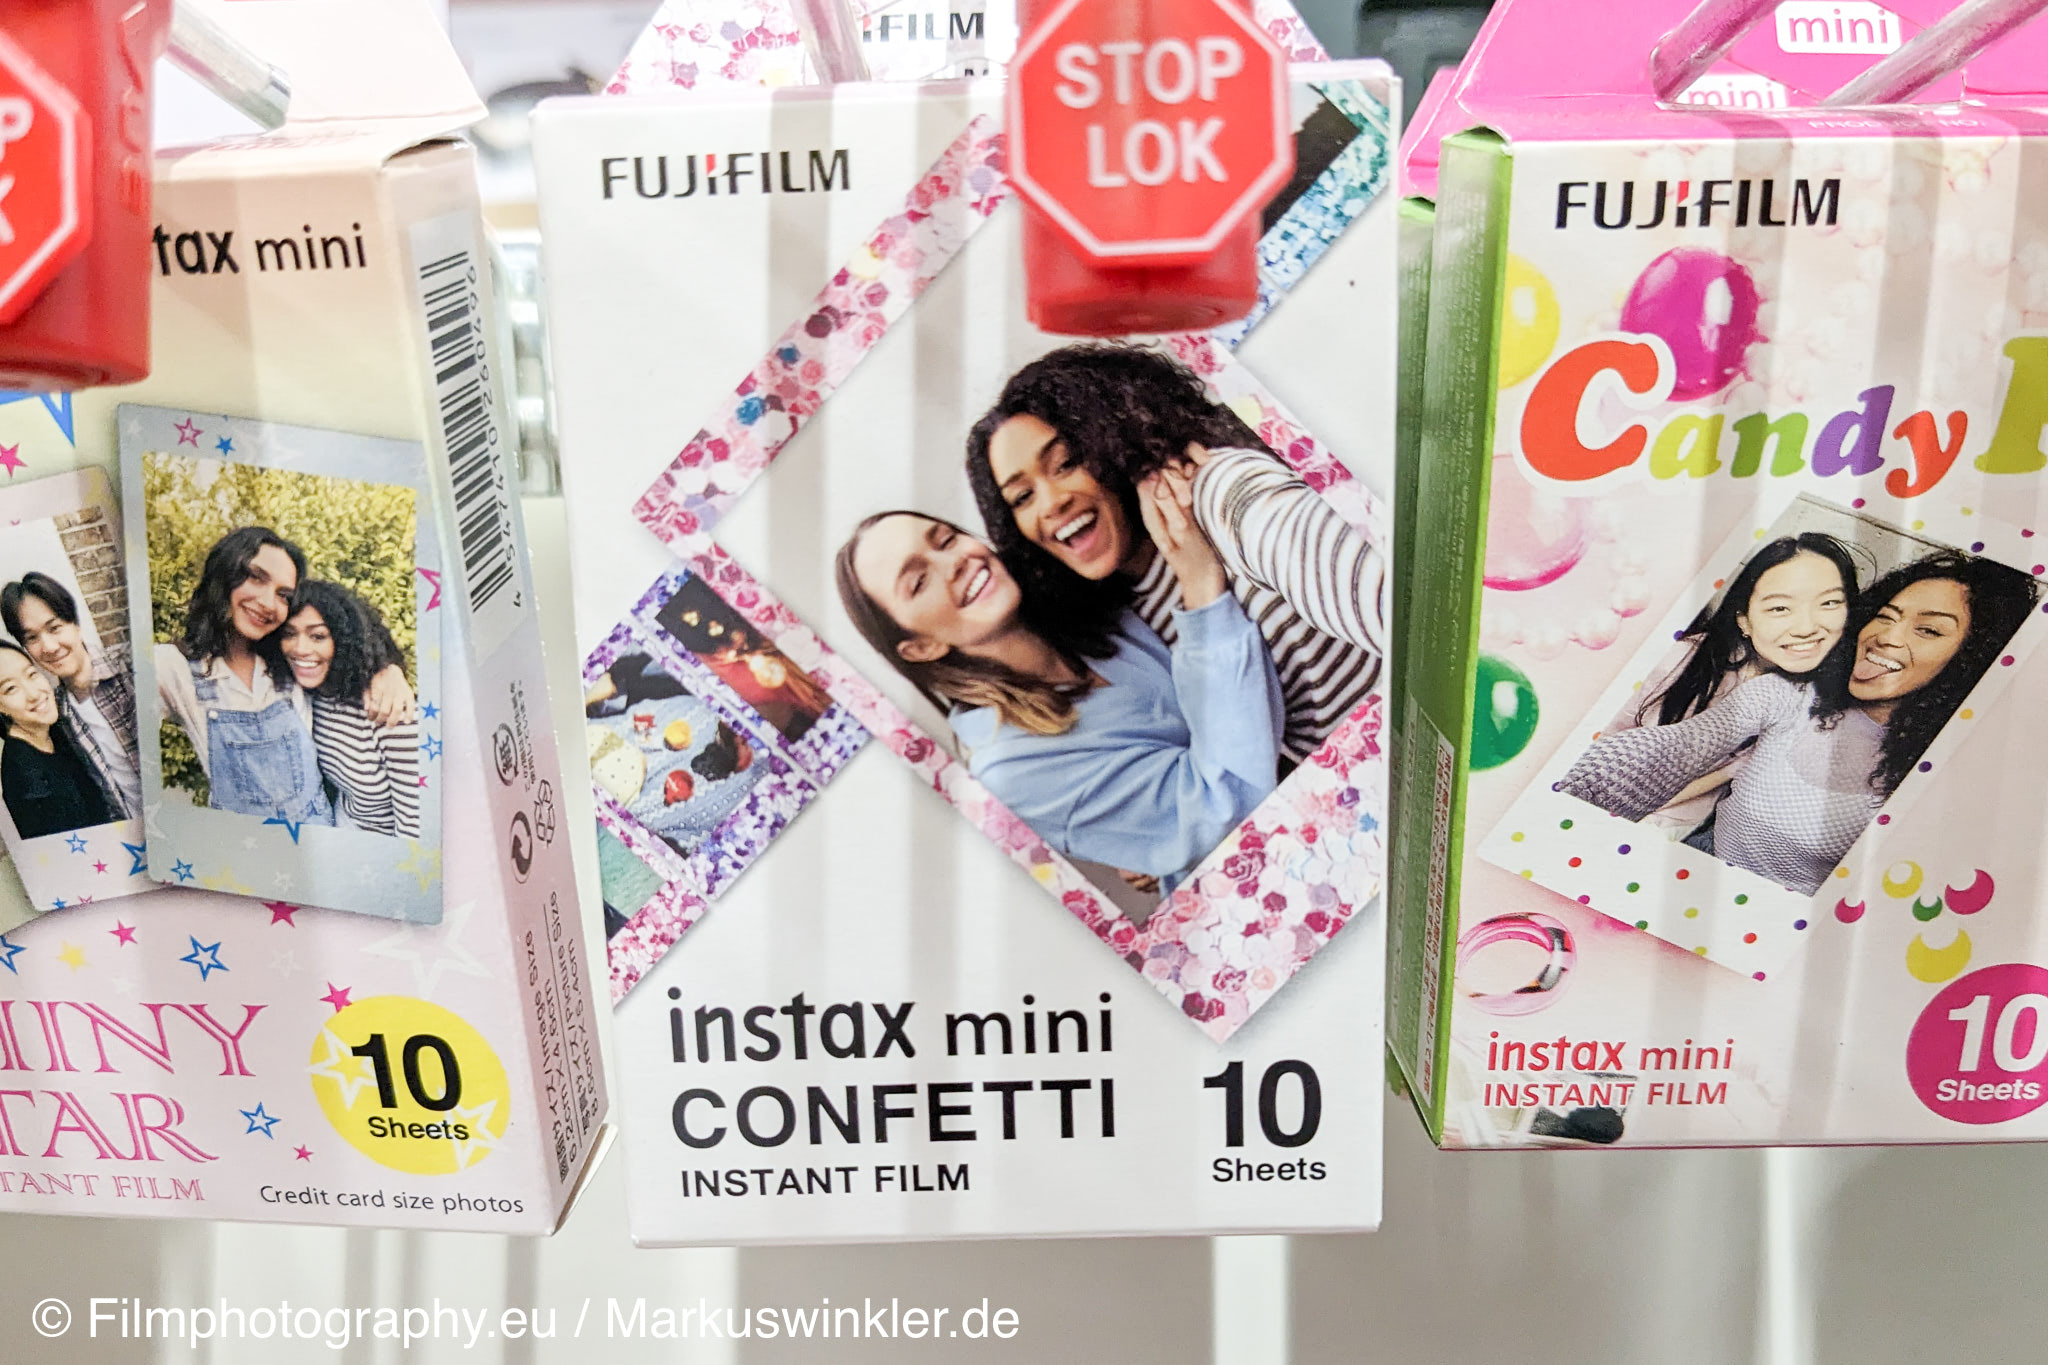 fujifilm-instax-mini-confetti-edition-instant-film